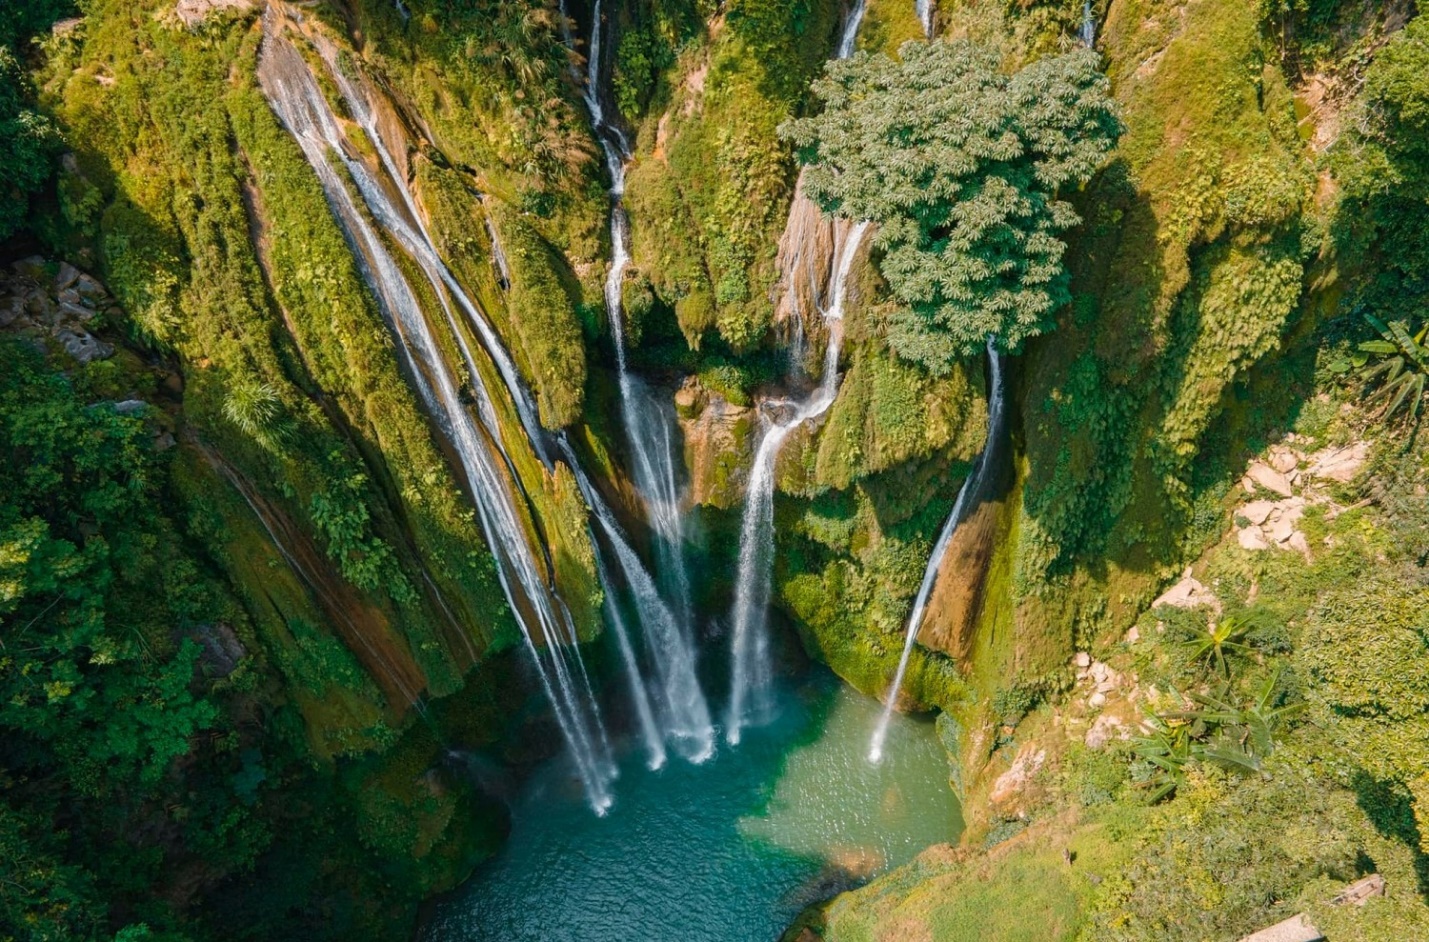 Cách Hà Nội không xa có một thác nước 7 tầng, được ví đẹp như "tuyệt tình cốc" trong phim